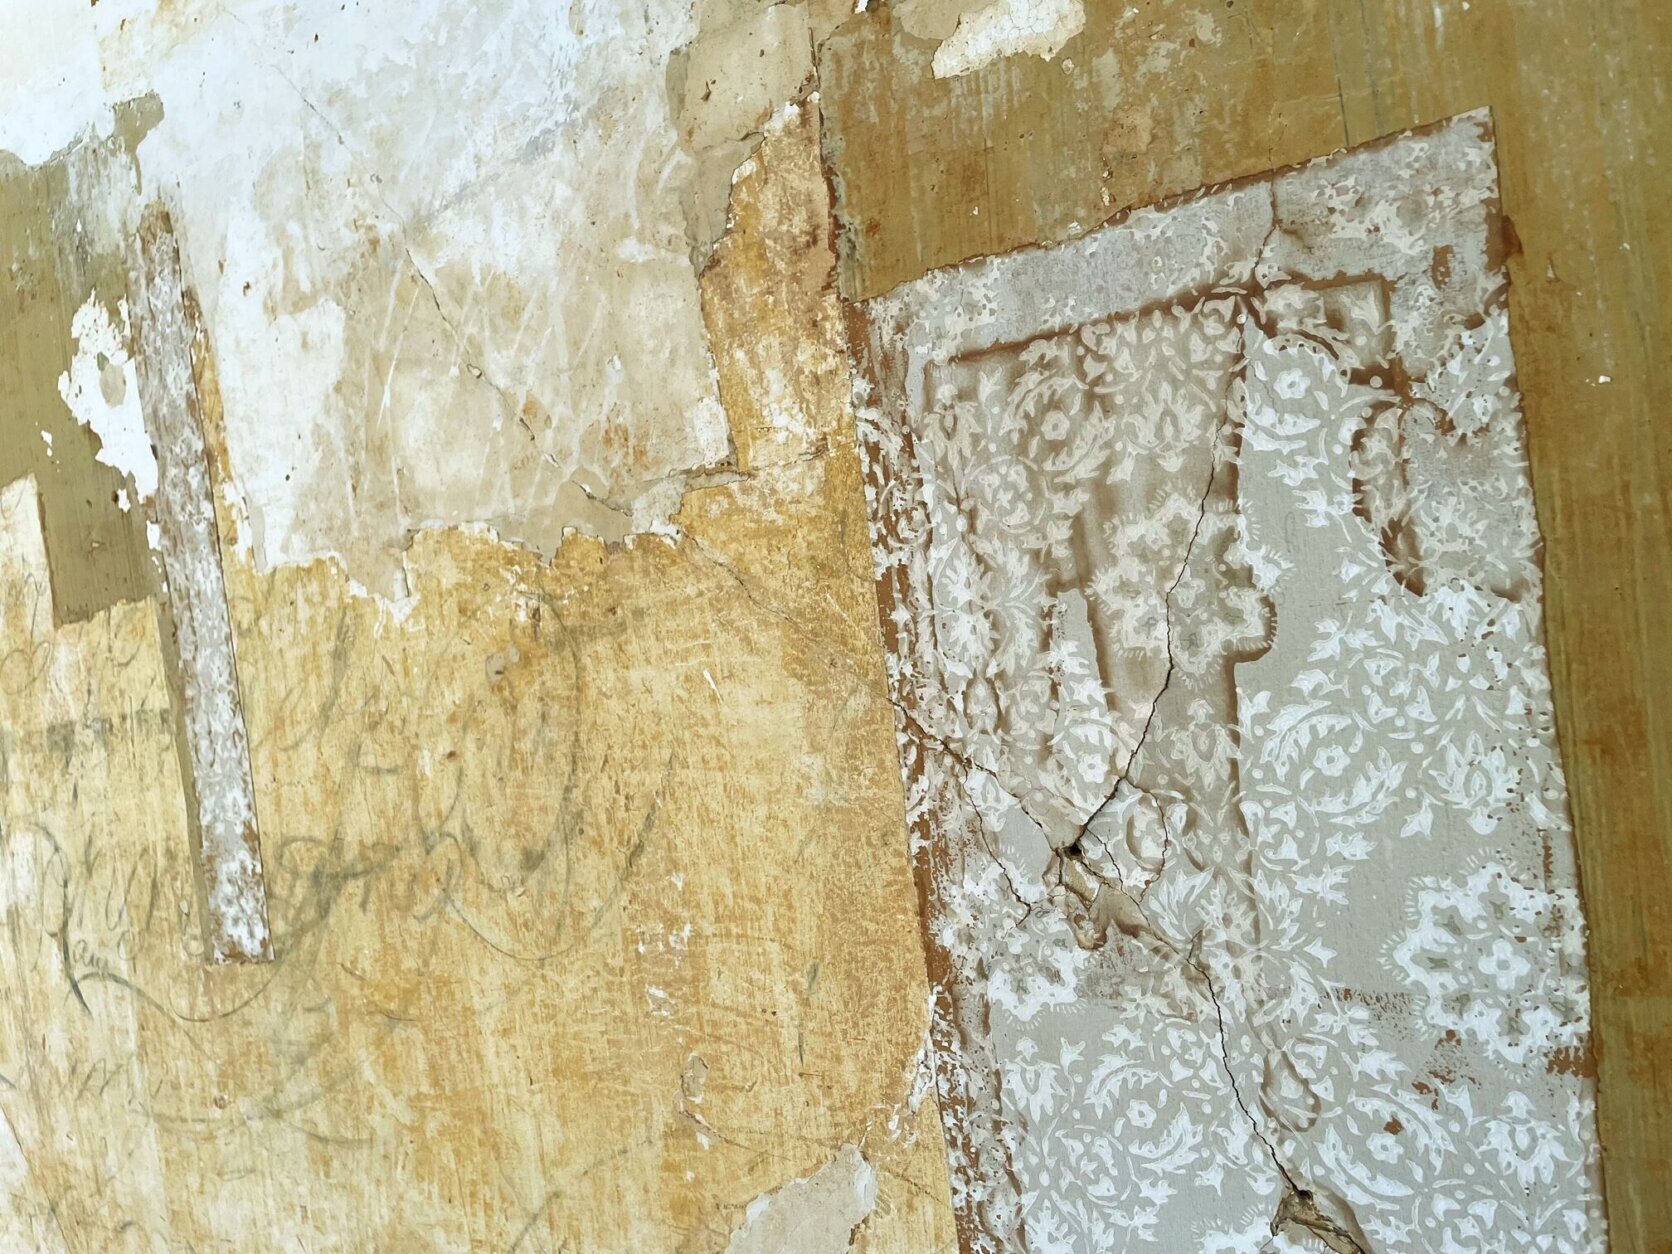 blenheim wallpaper removal